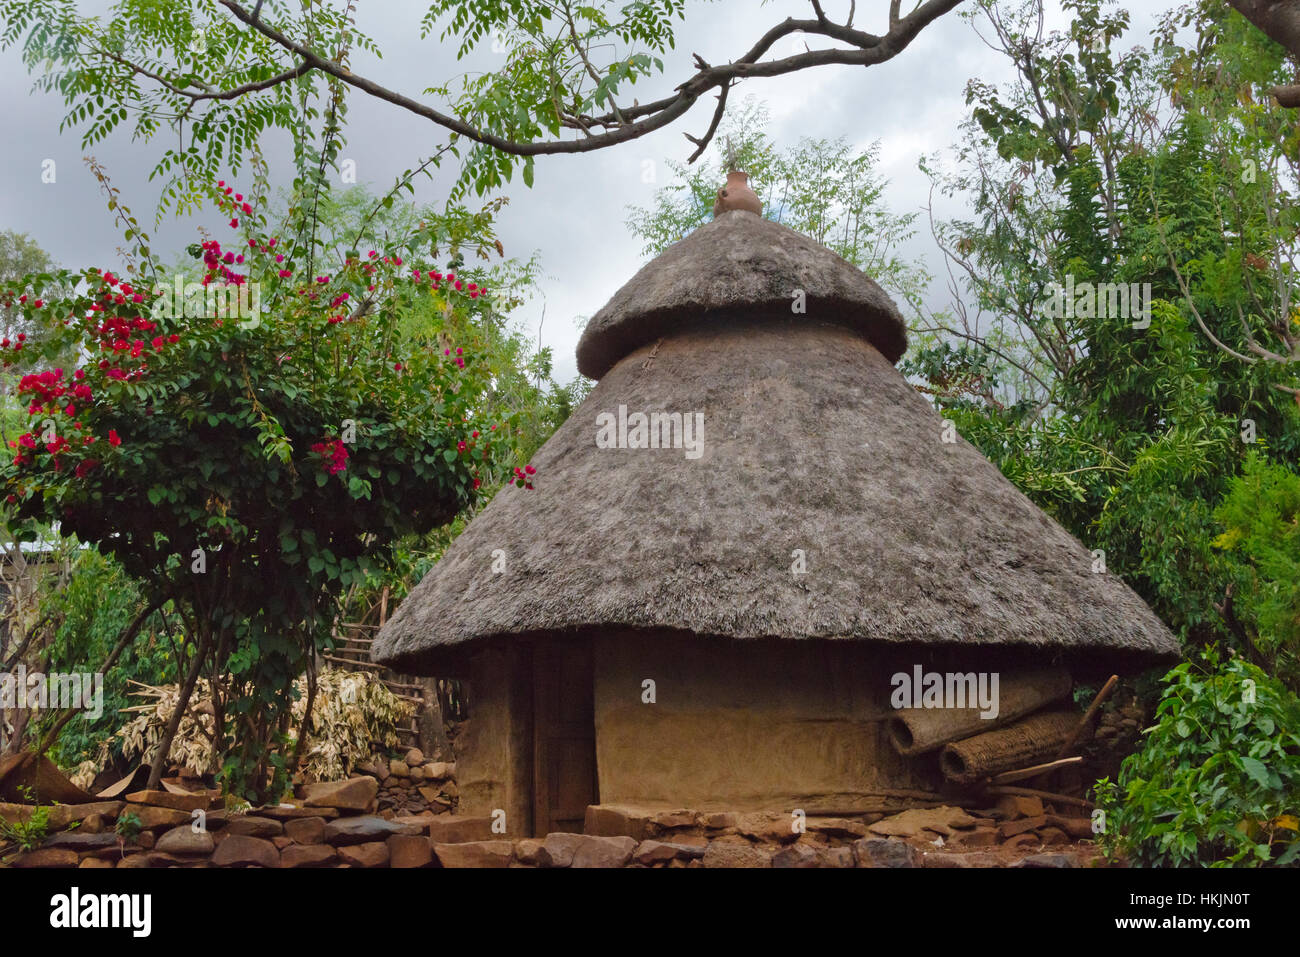 Konso Paysage culturel (patrimoine de l'UNESCO), maison de village traditionnel avec un toit de chaume, l'Ethiopie Banque D'Images